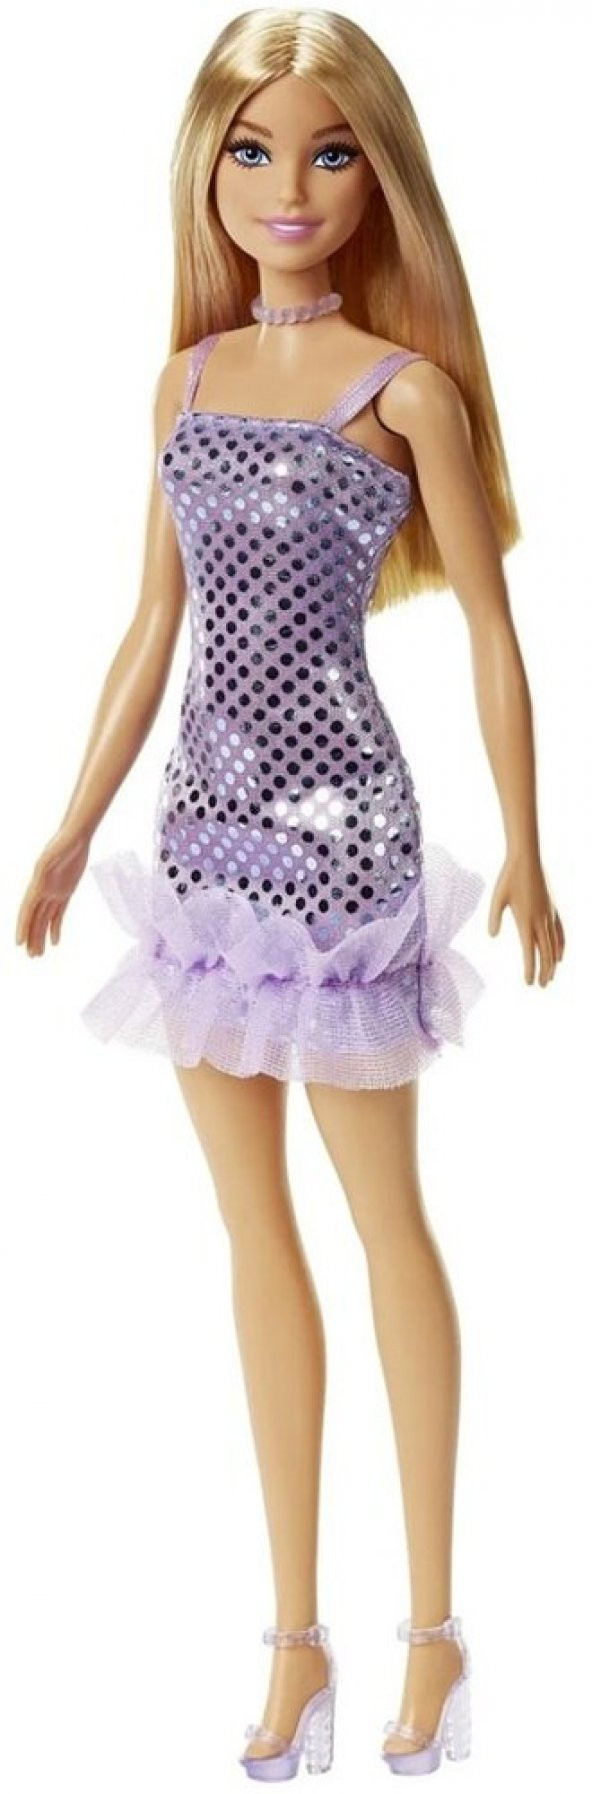 Barbie Pırıltılı Bebekler Mor Elbise T7580 HJR93 Lisanslı Ürün